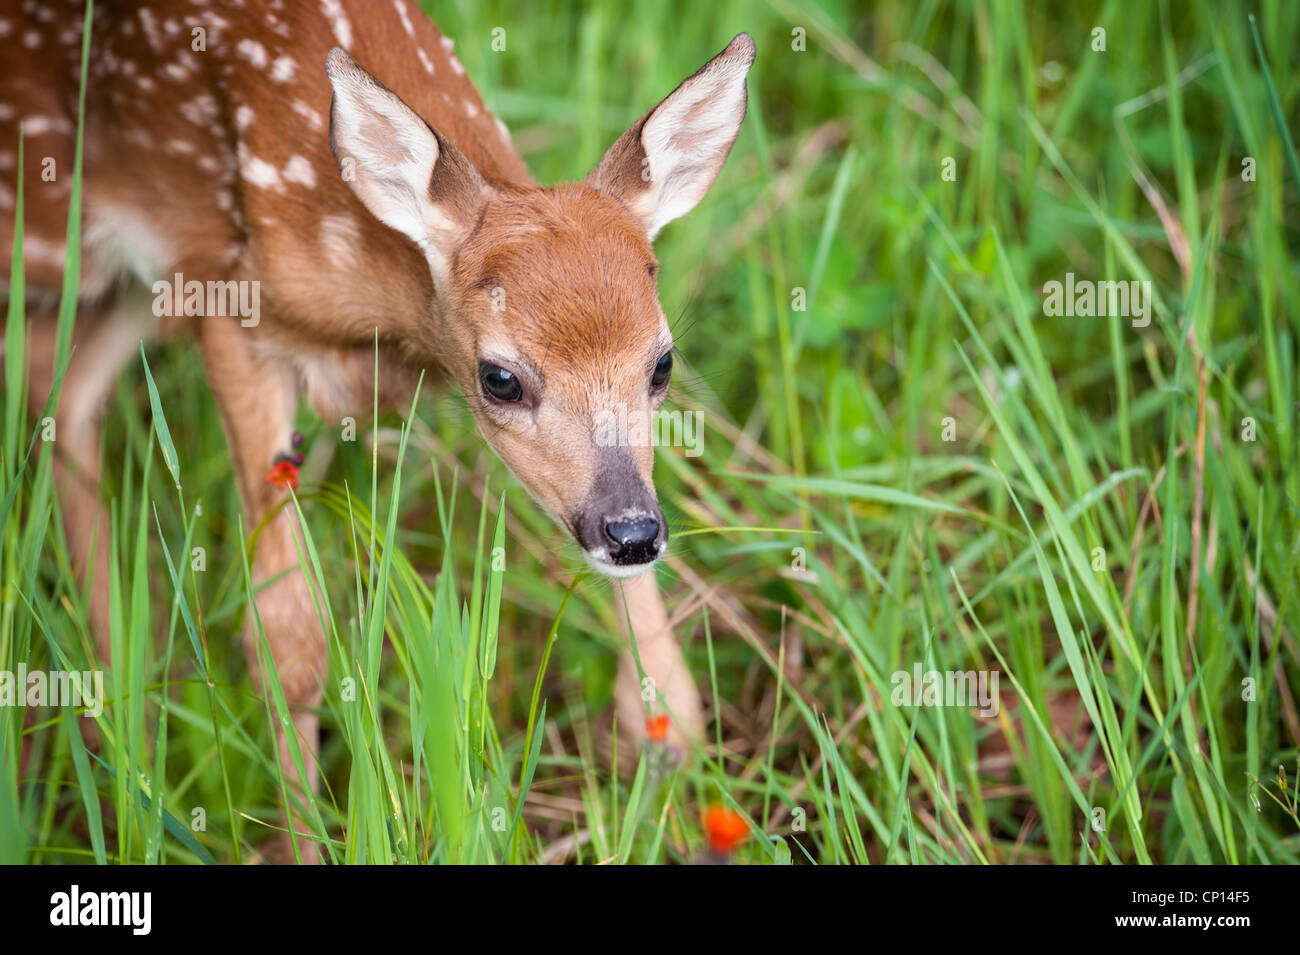 Neonato Deer Fawn camminando in erba di primavera Foto Stock